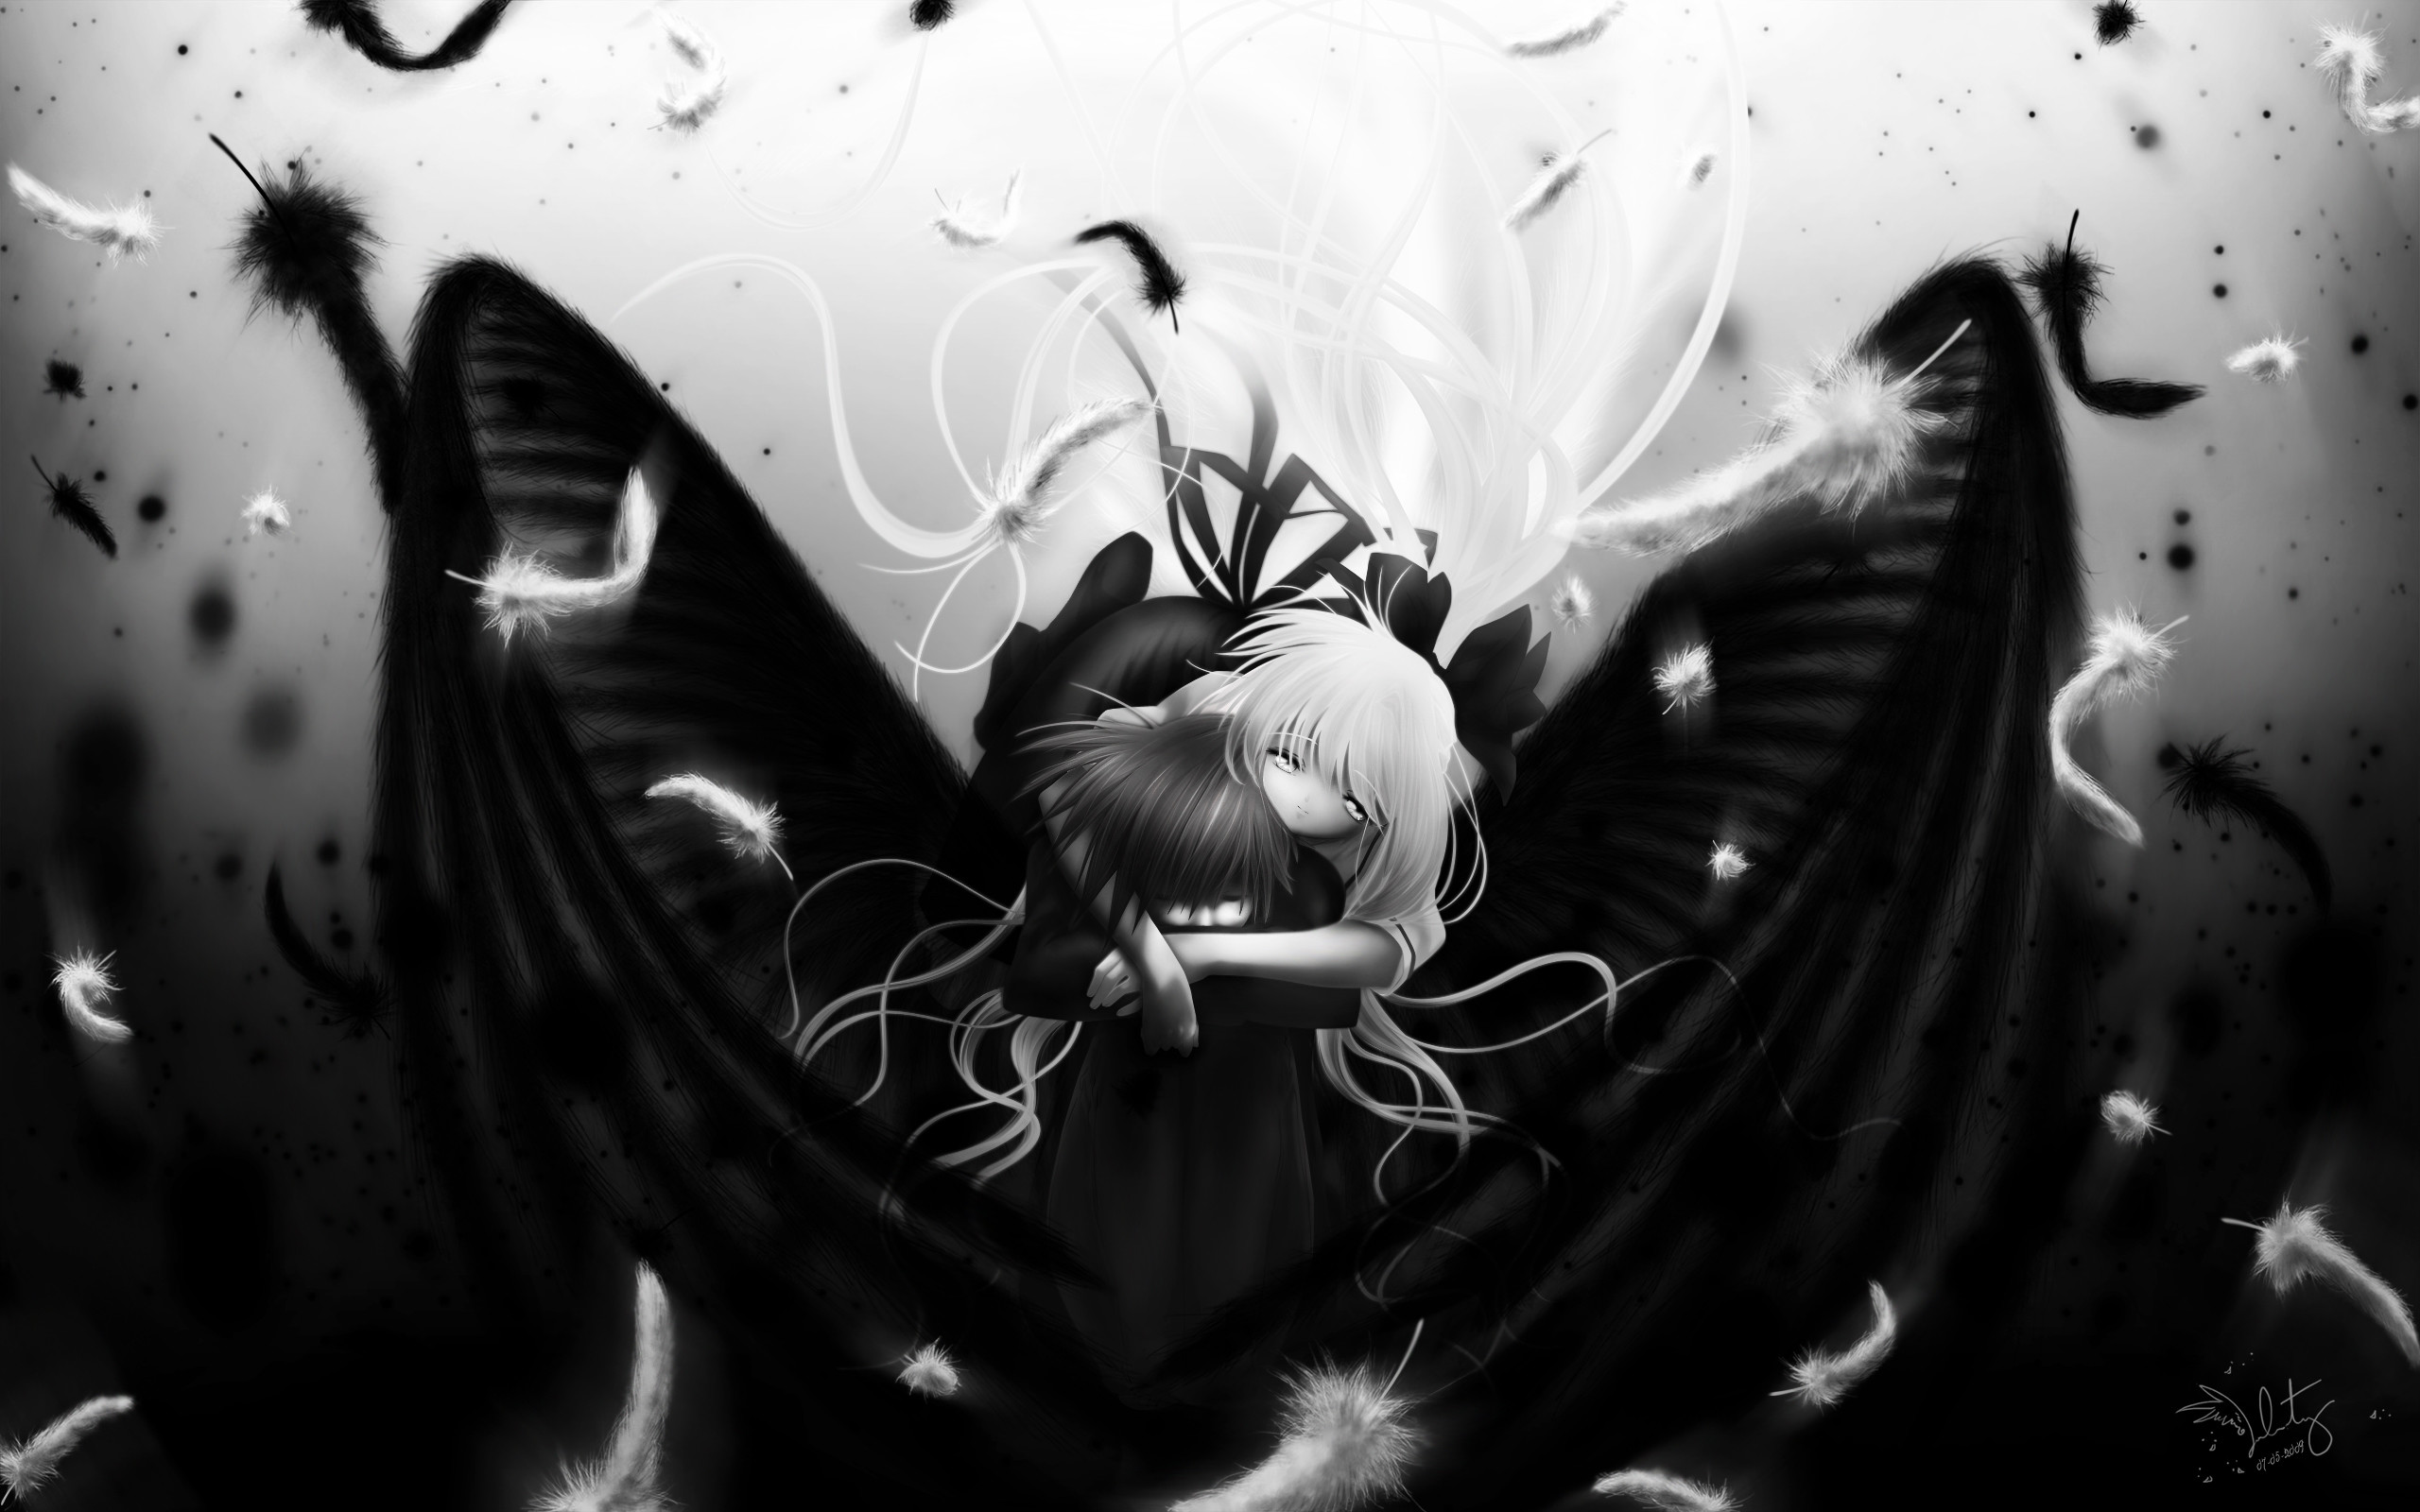 Dark anime Boy 1 by LilyGothiKitty on DeviantArt